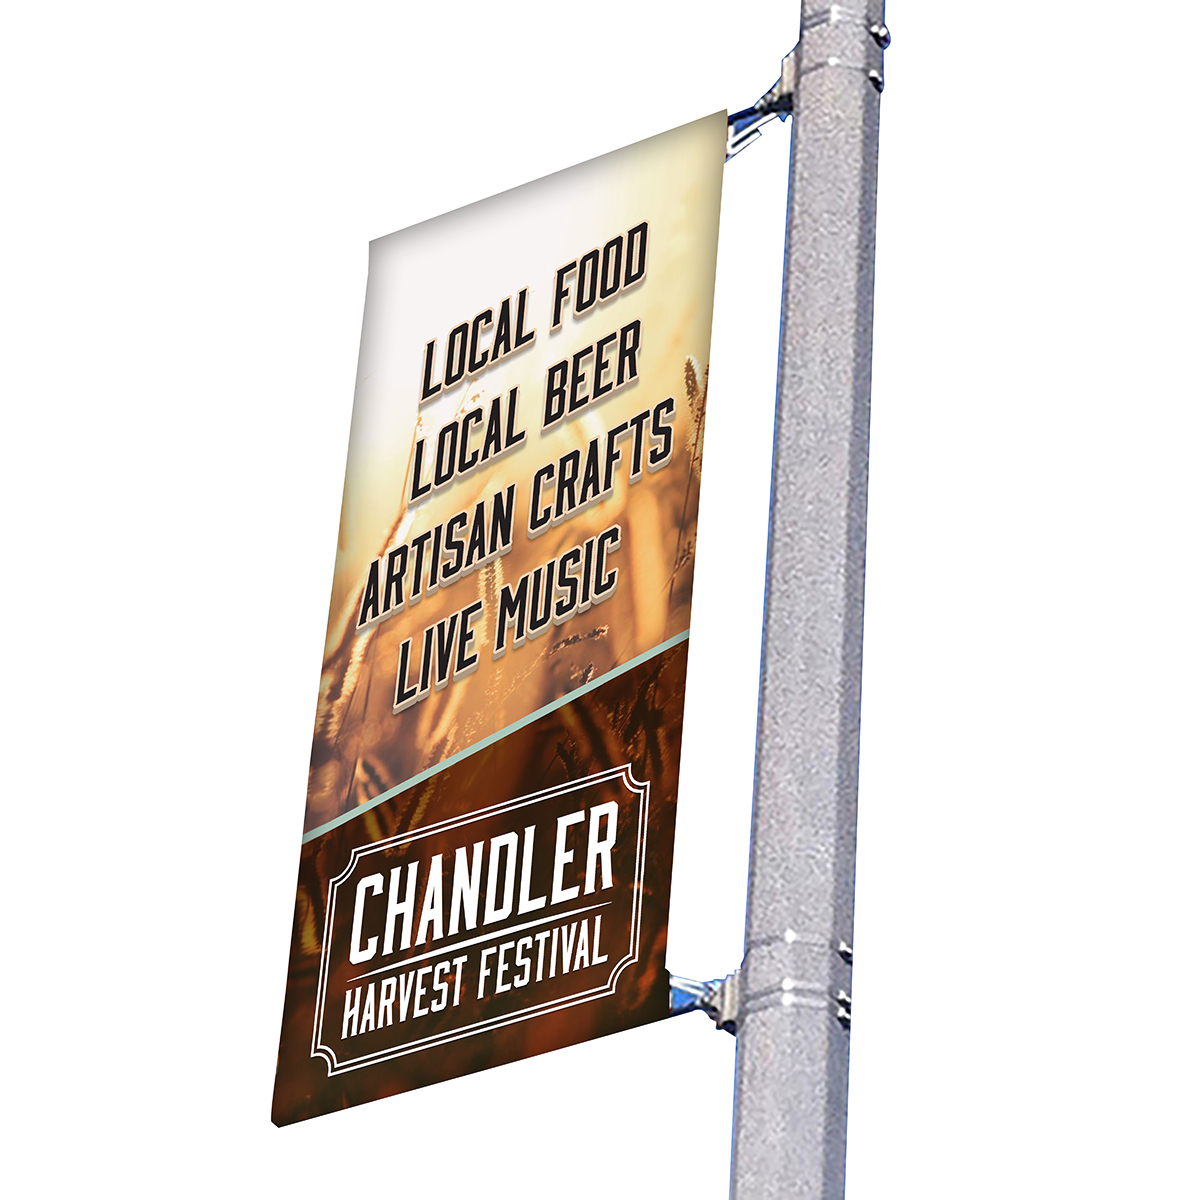 18" wide single side pole banner